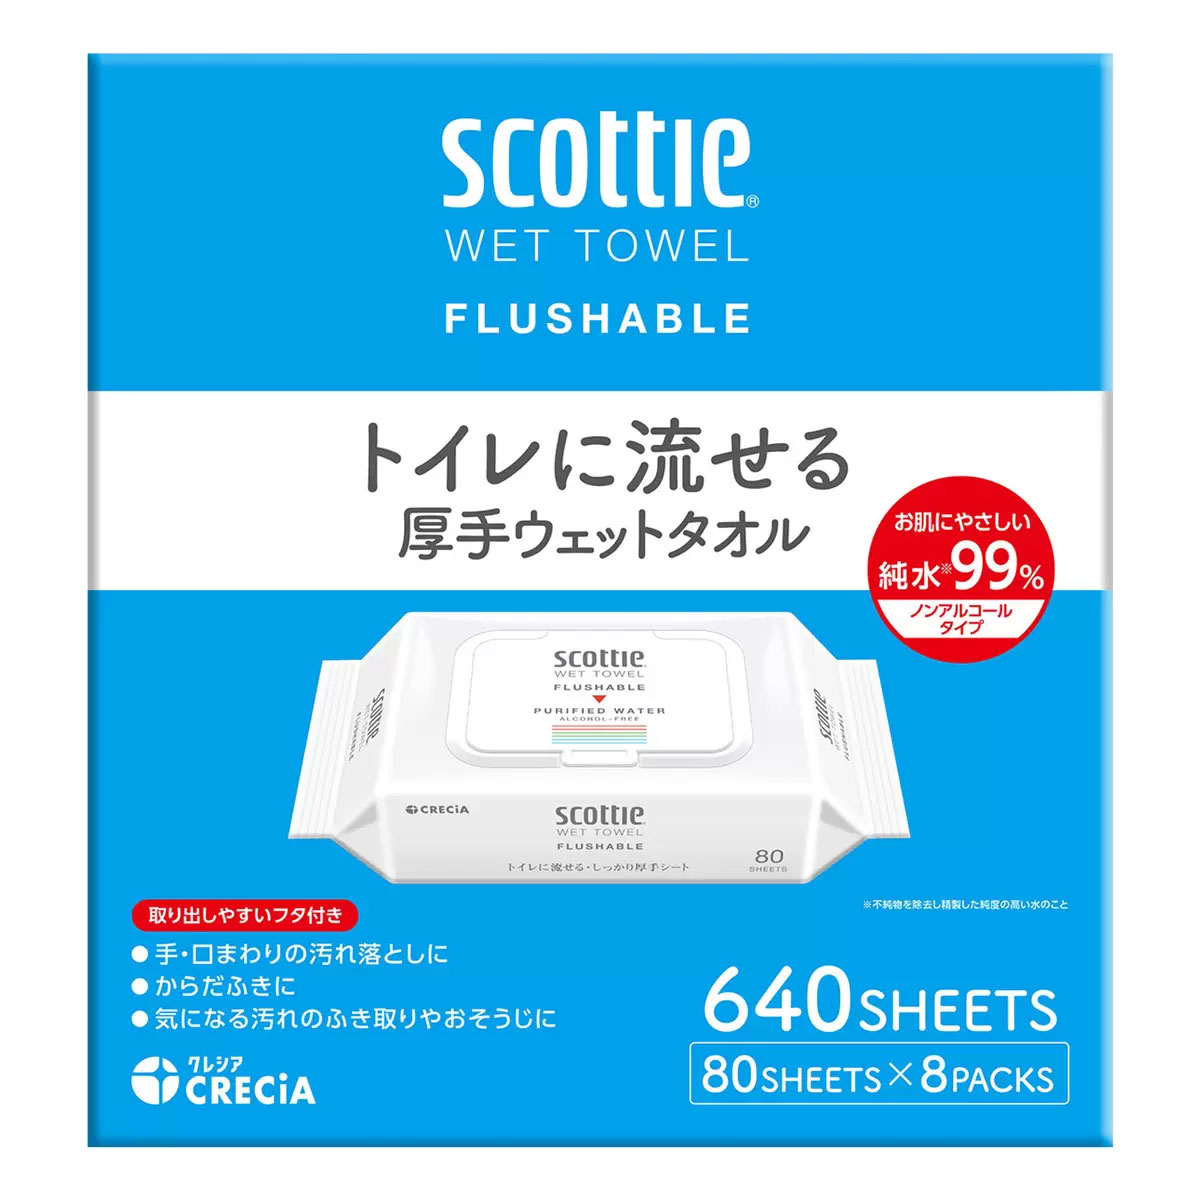 【送料無料】【ケース販売】スコッティ トイレに流せる厚手ウェットタオル 80枚×8パック 1